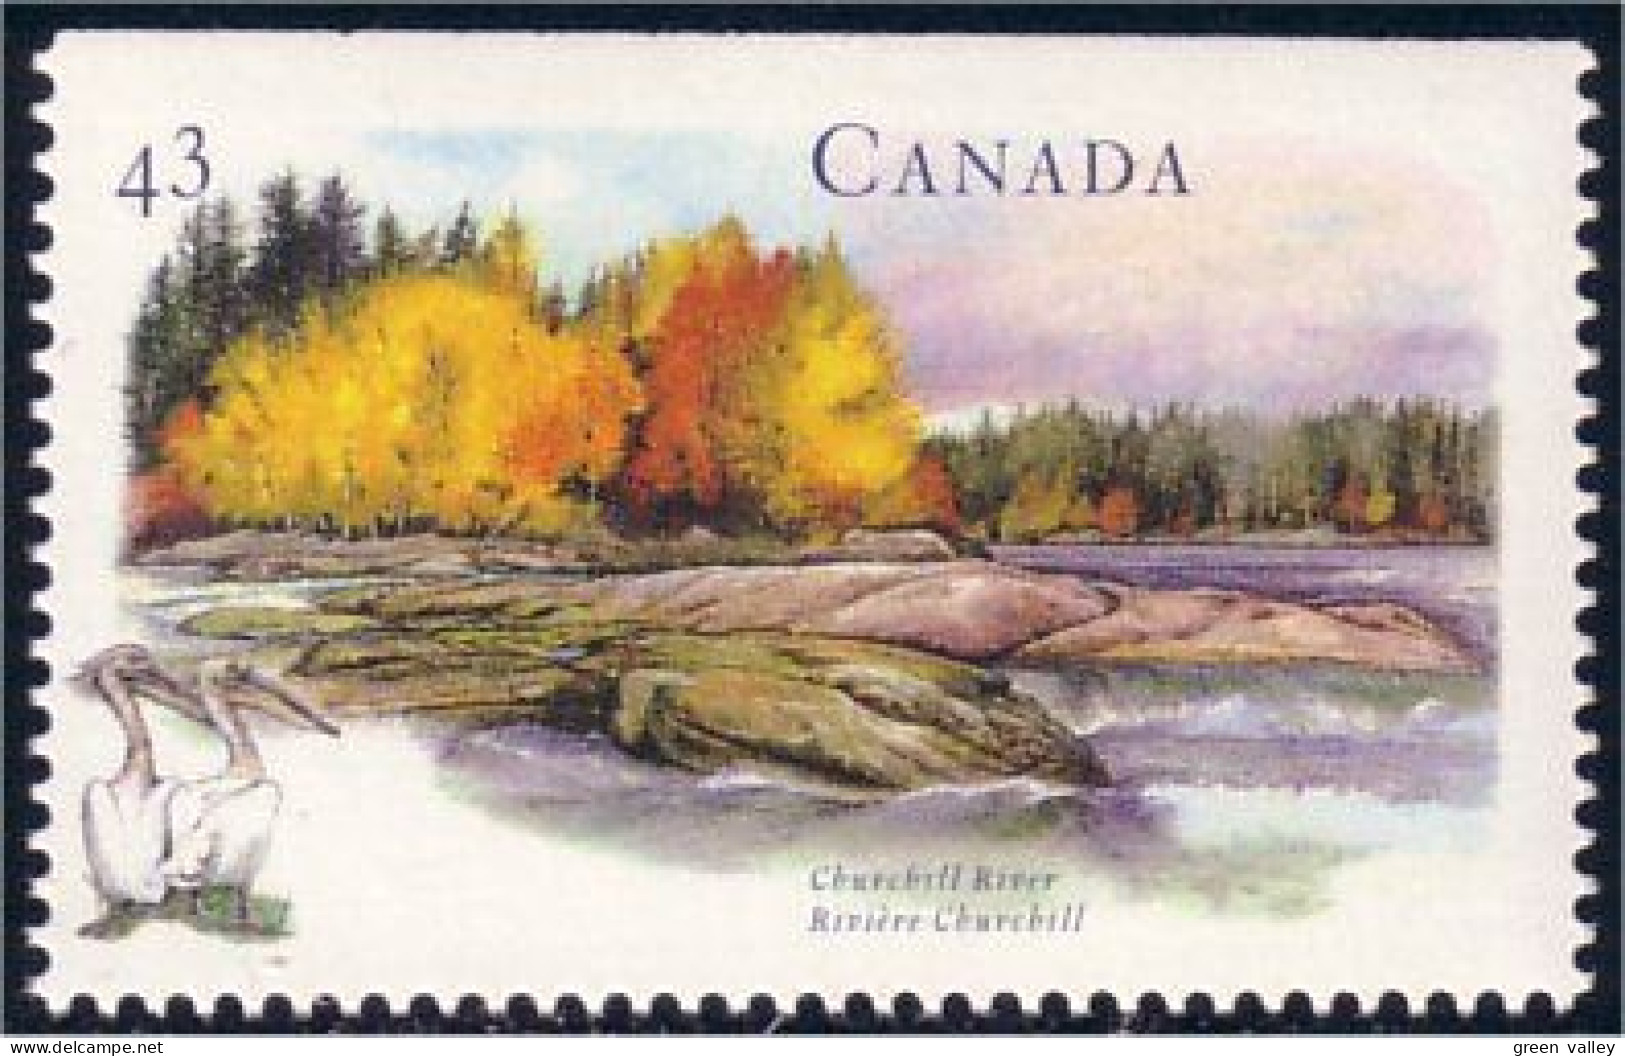 Canada Riviere Churchill River Pelicans MNH ** Neuf SC (C15-14hb) - Indiens D'Amérique